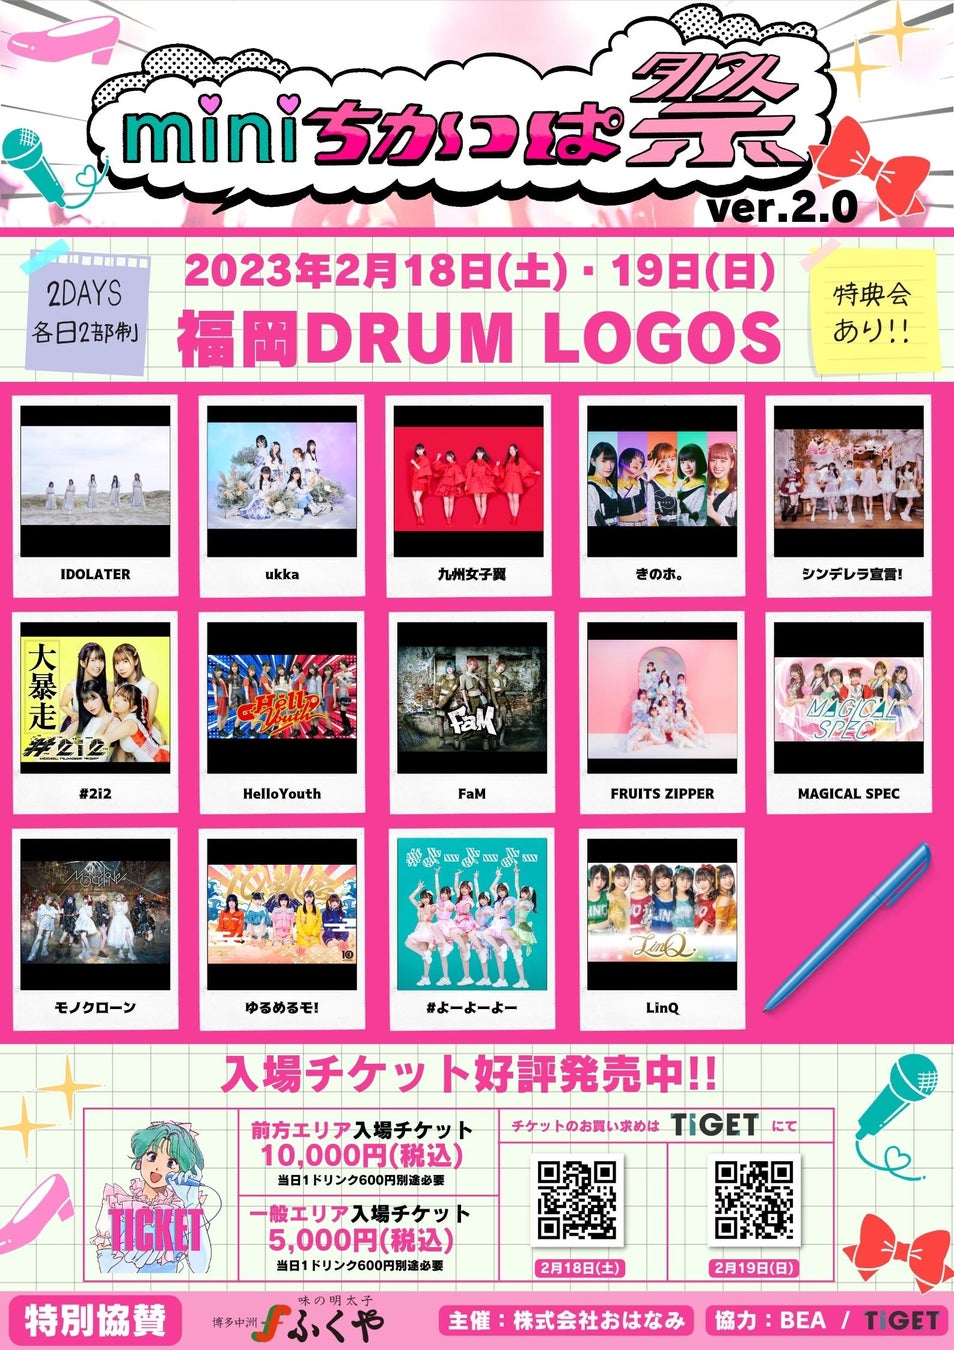 全国から福岡にアイドルが集まるライブイベント「miniちかっぱ祭 ver.2.0」TIGETにてチケット発売